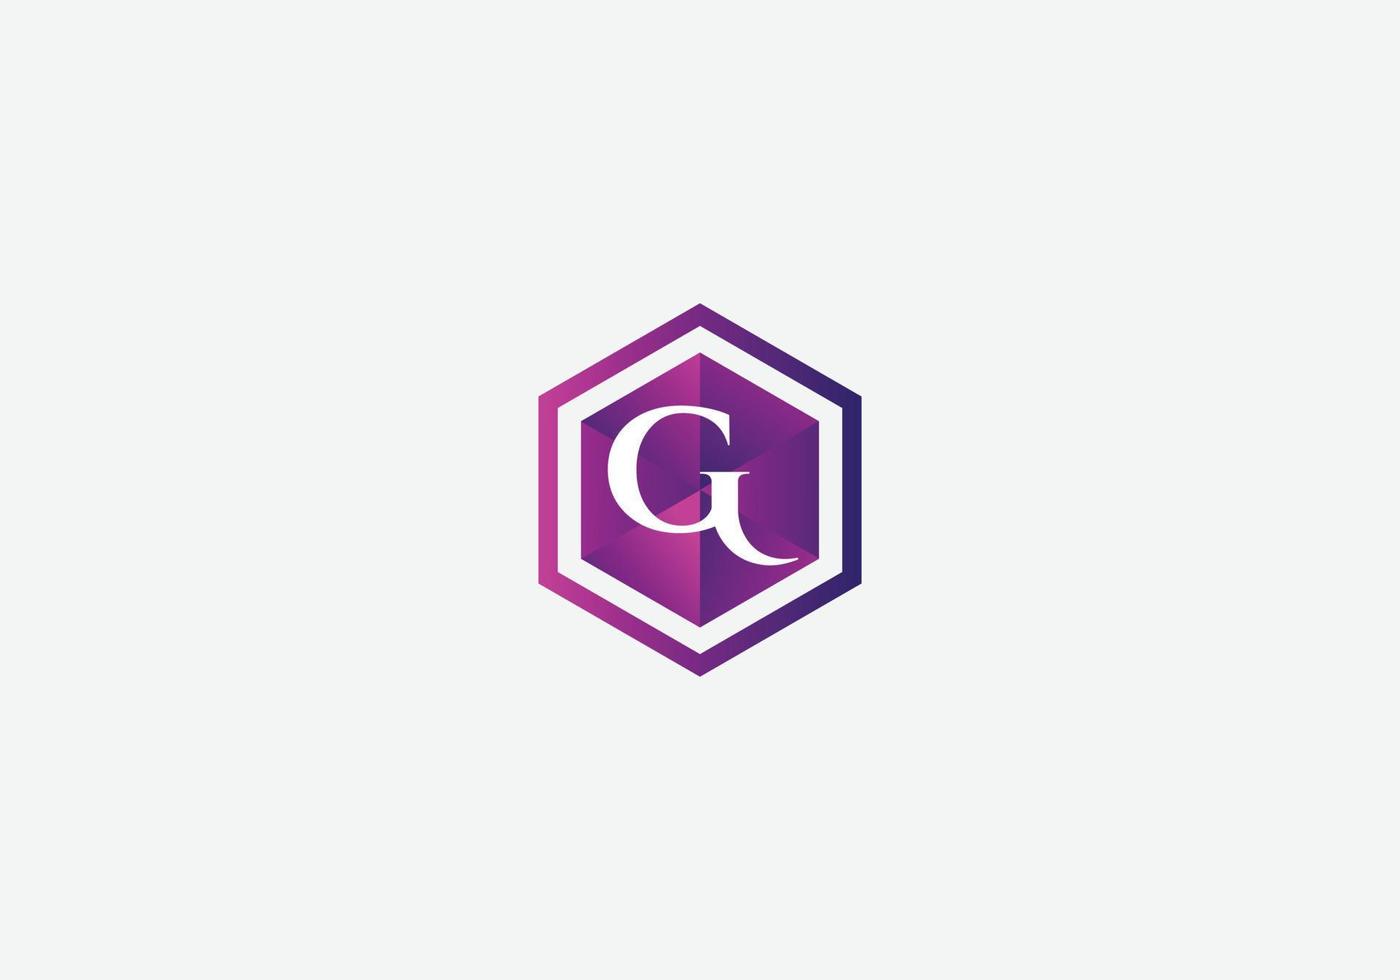 Abstract G letter modern initial lettermarks logo design vector